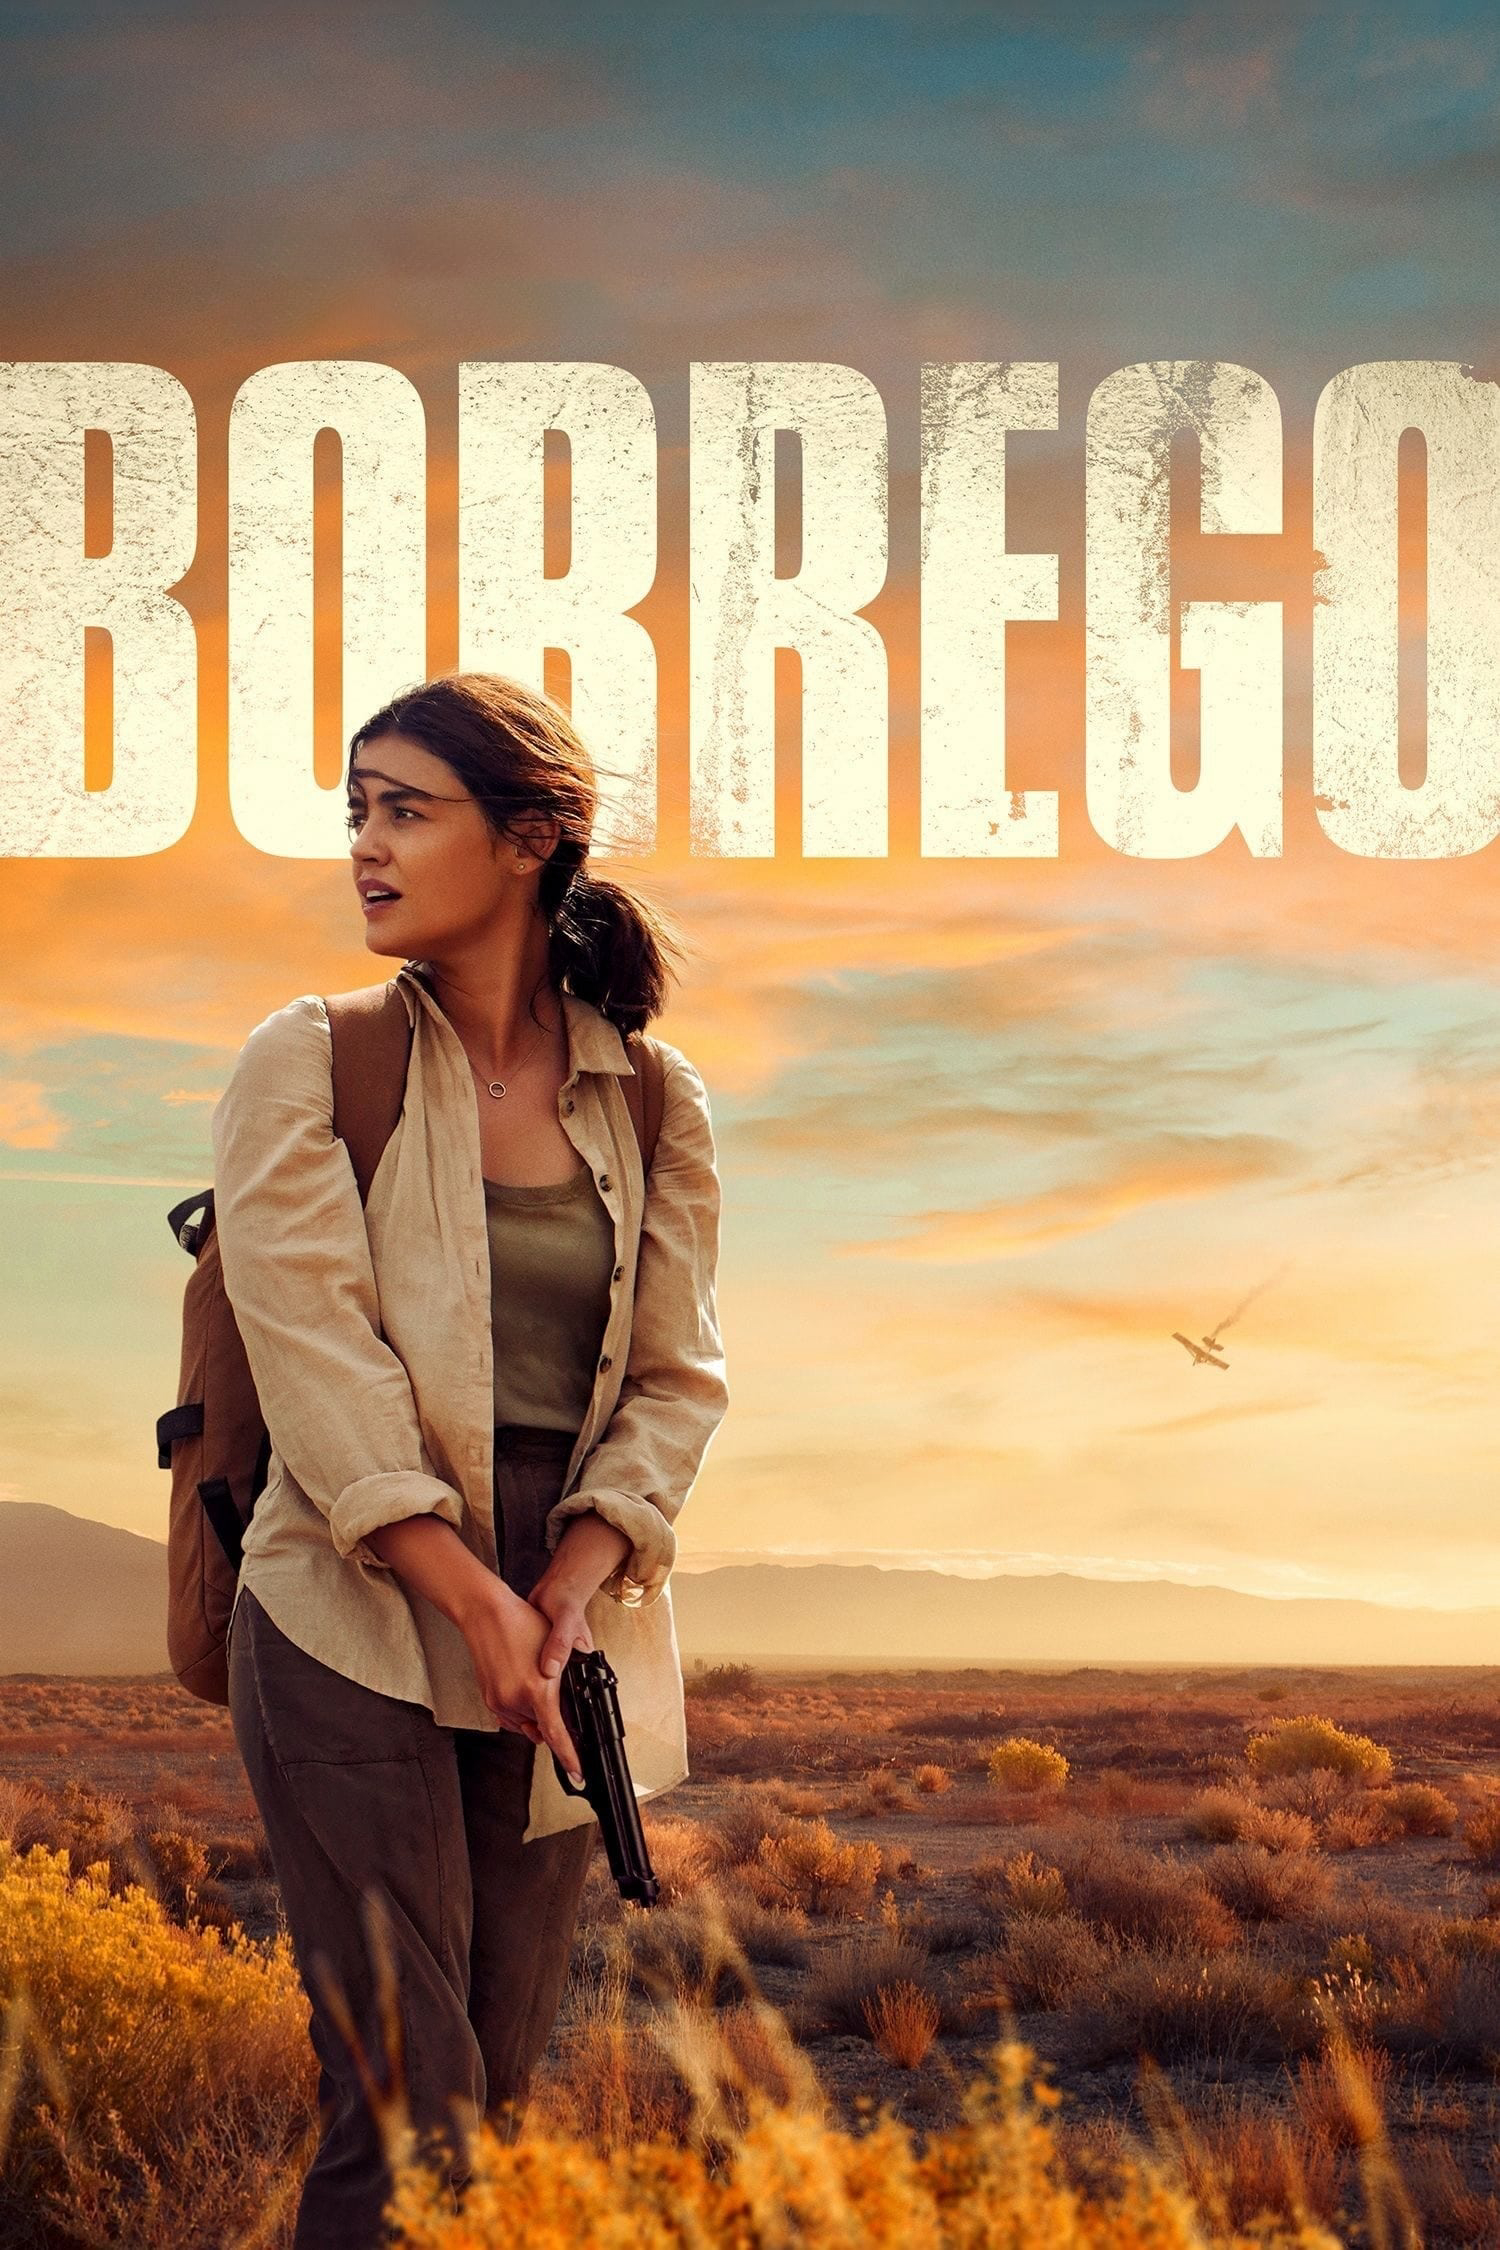 Poster Phim Borrego (Borrego)